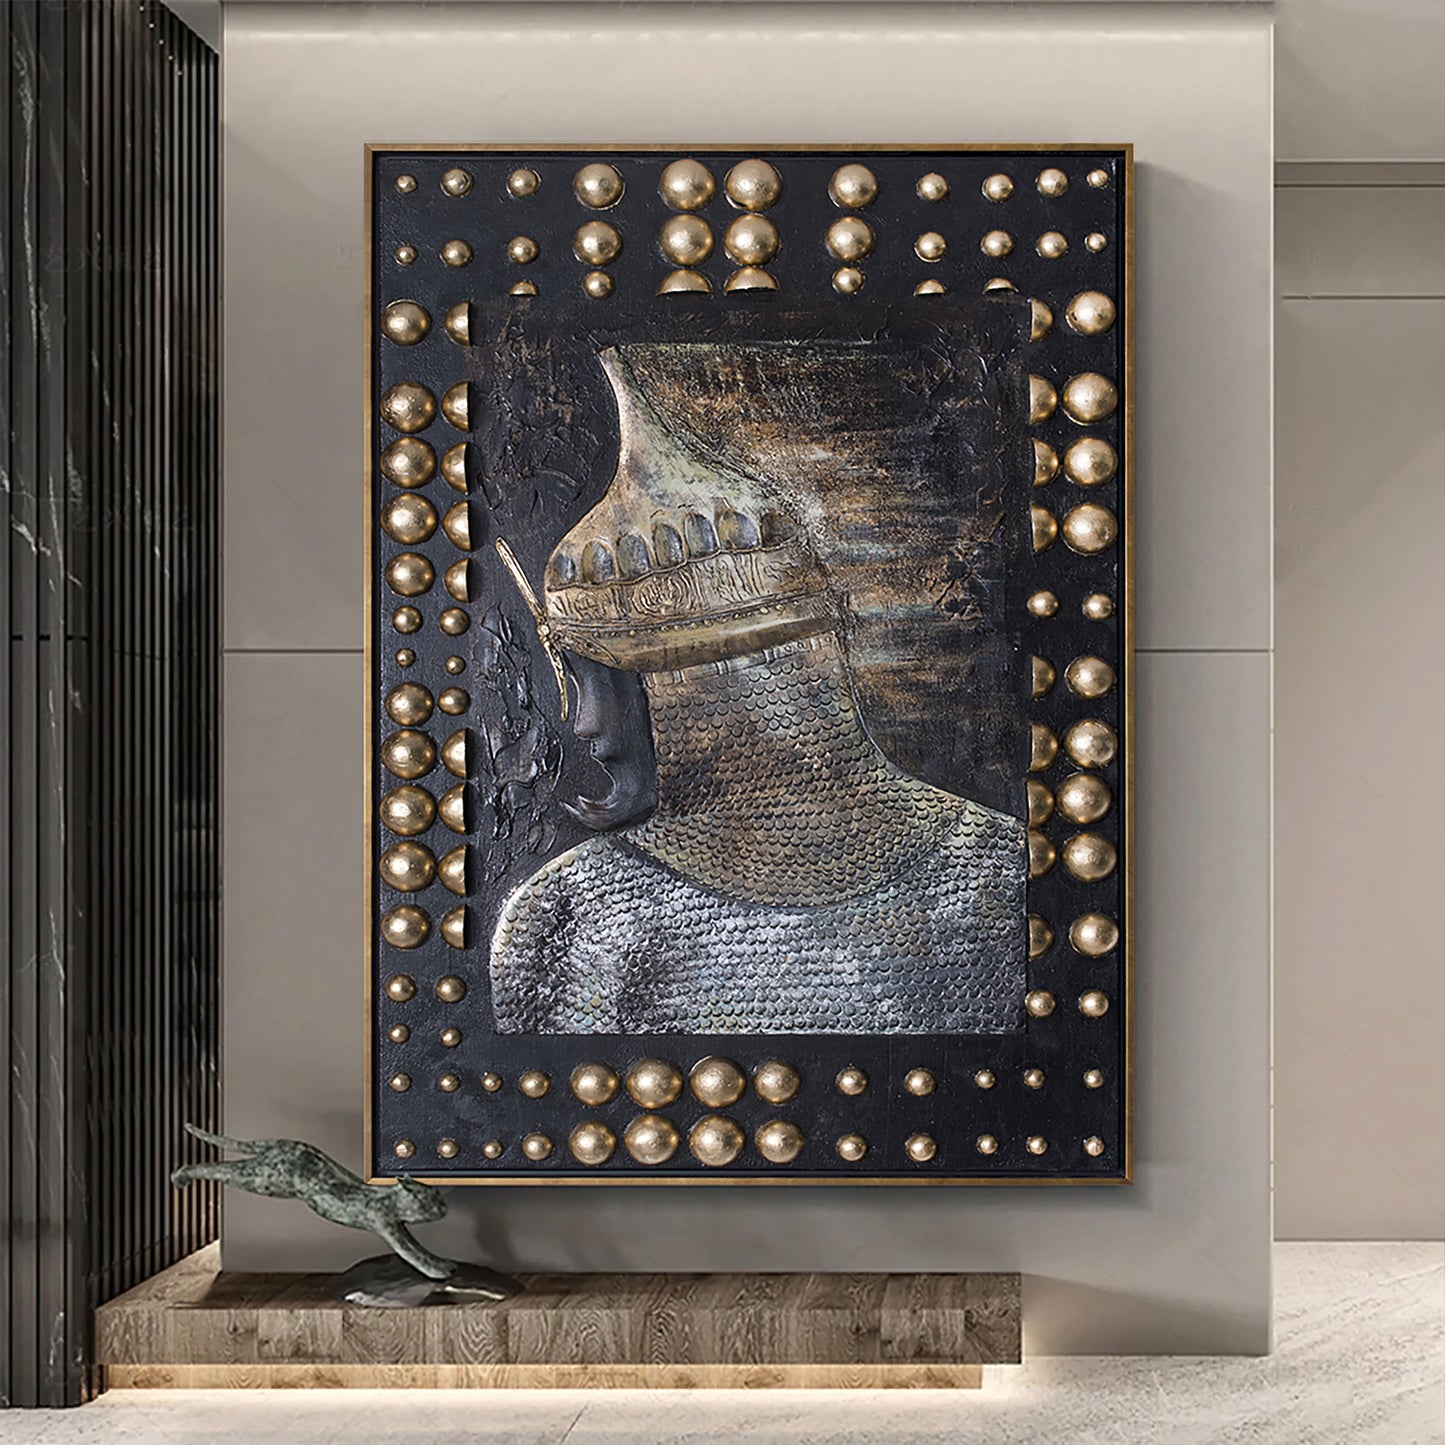 Cengiz Han Yağlı Boya Tablo 104x154cm